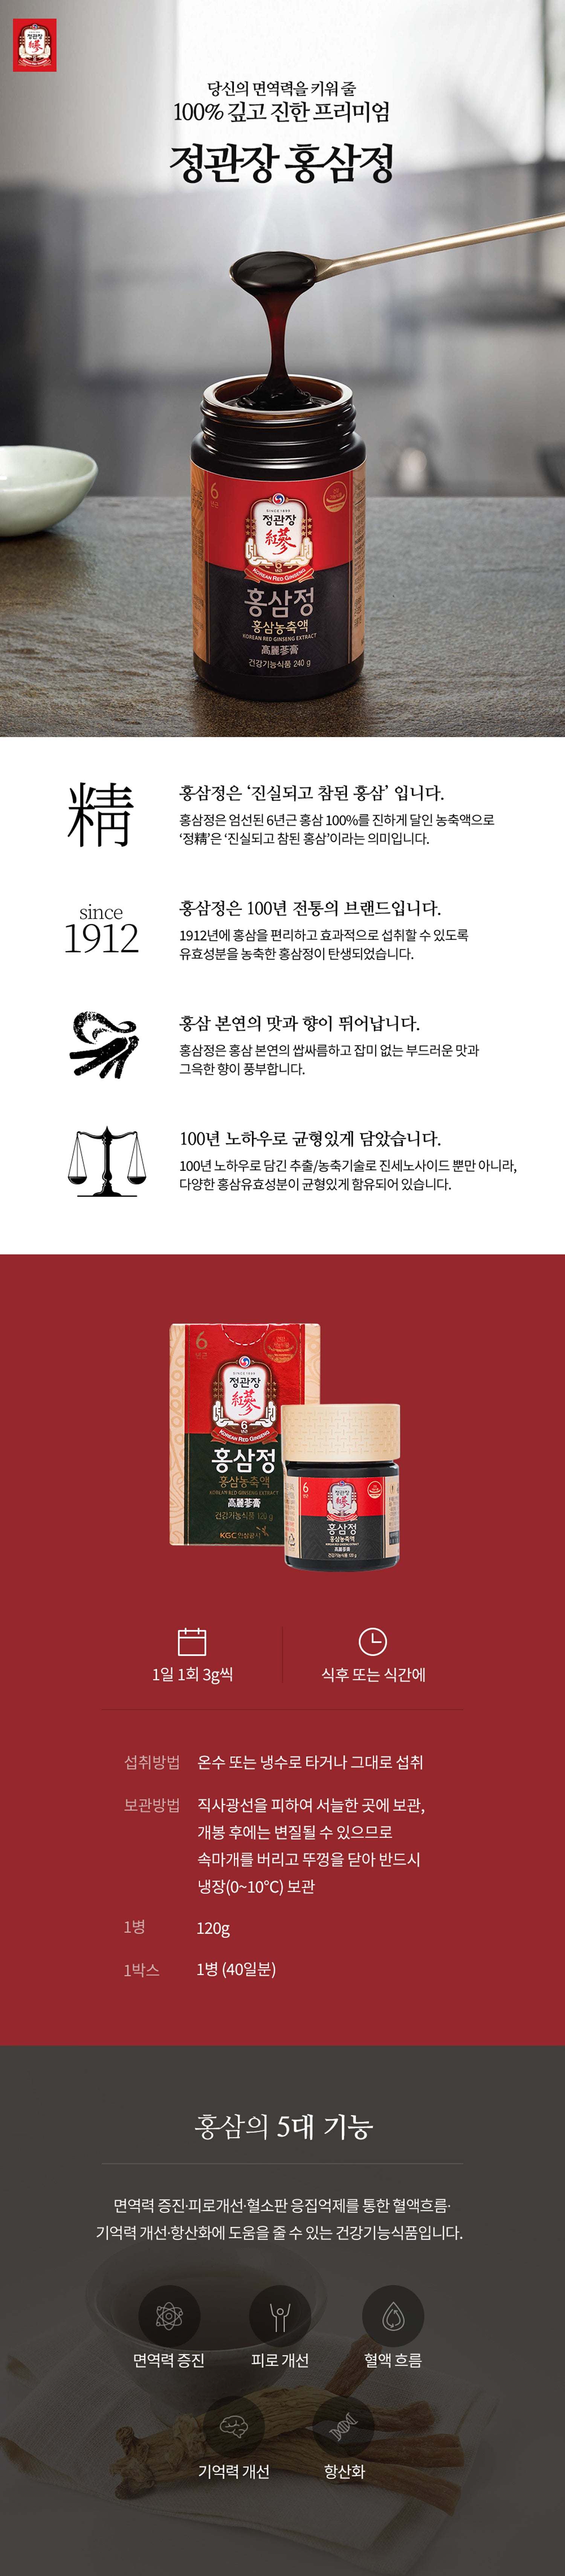 extrait-de-ginseng-rouge-120g-cheongkwanjang